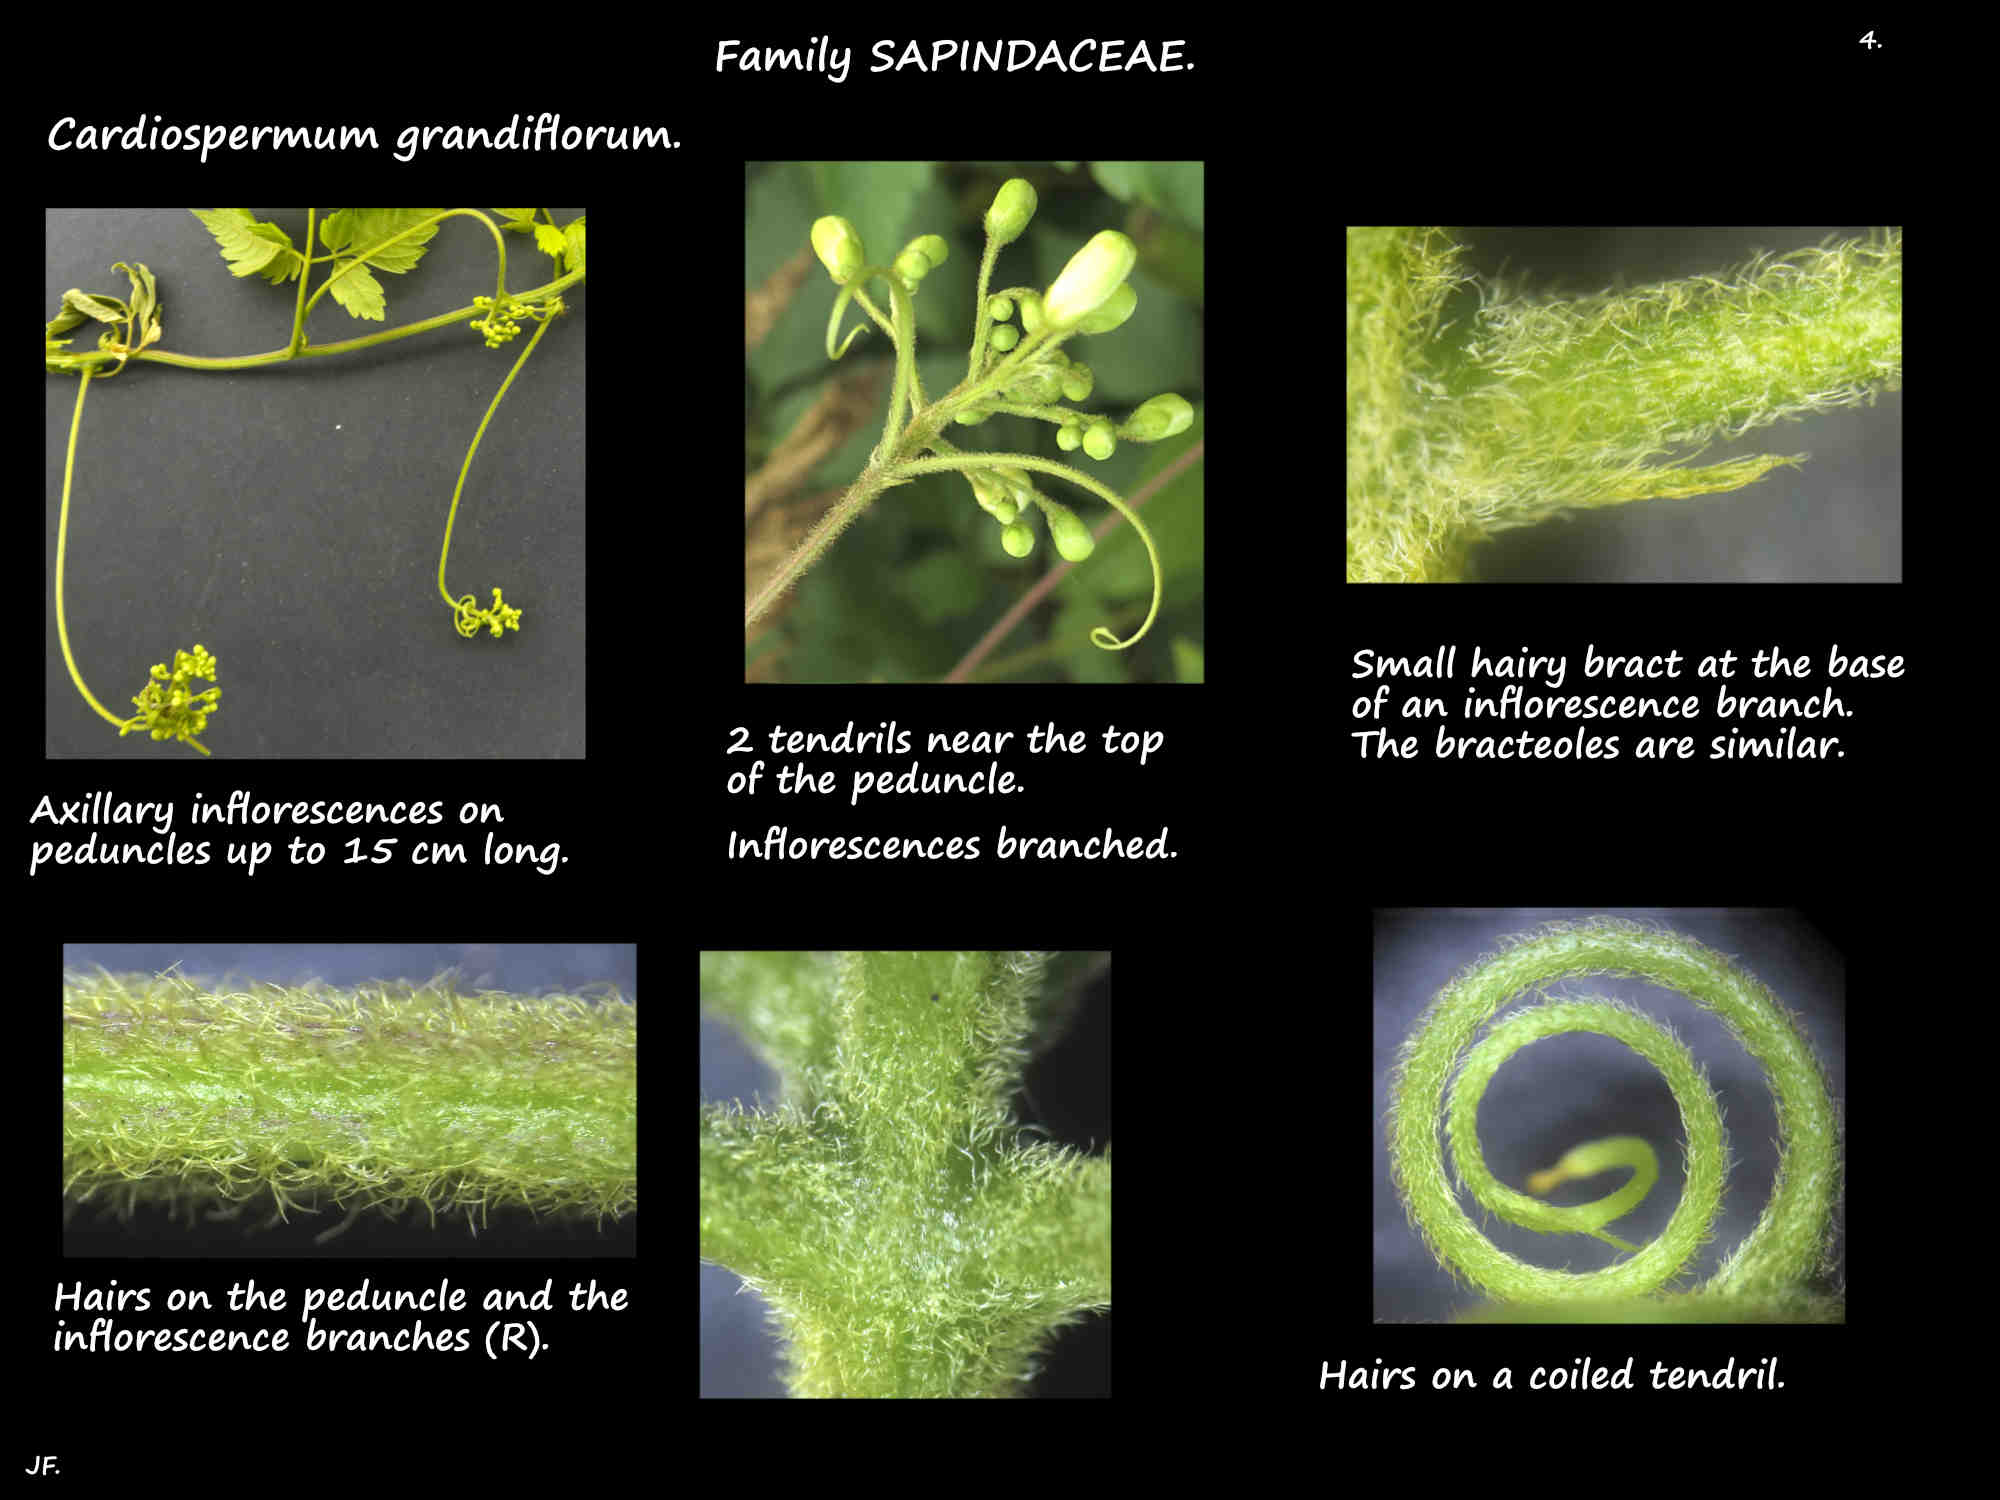 4 Cardiospermum grandiflorum inflorescences & tendril